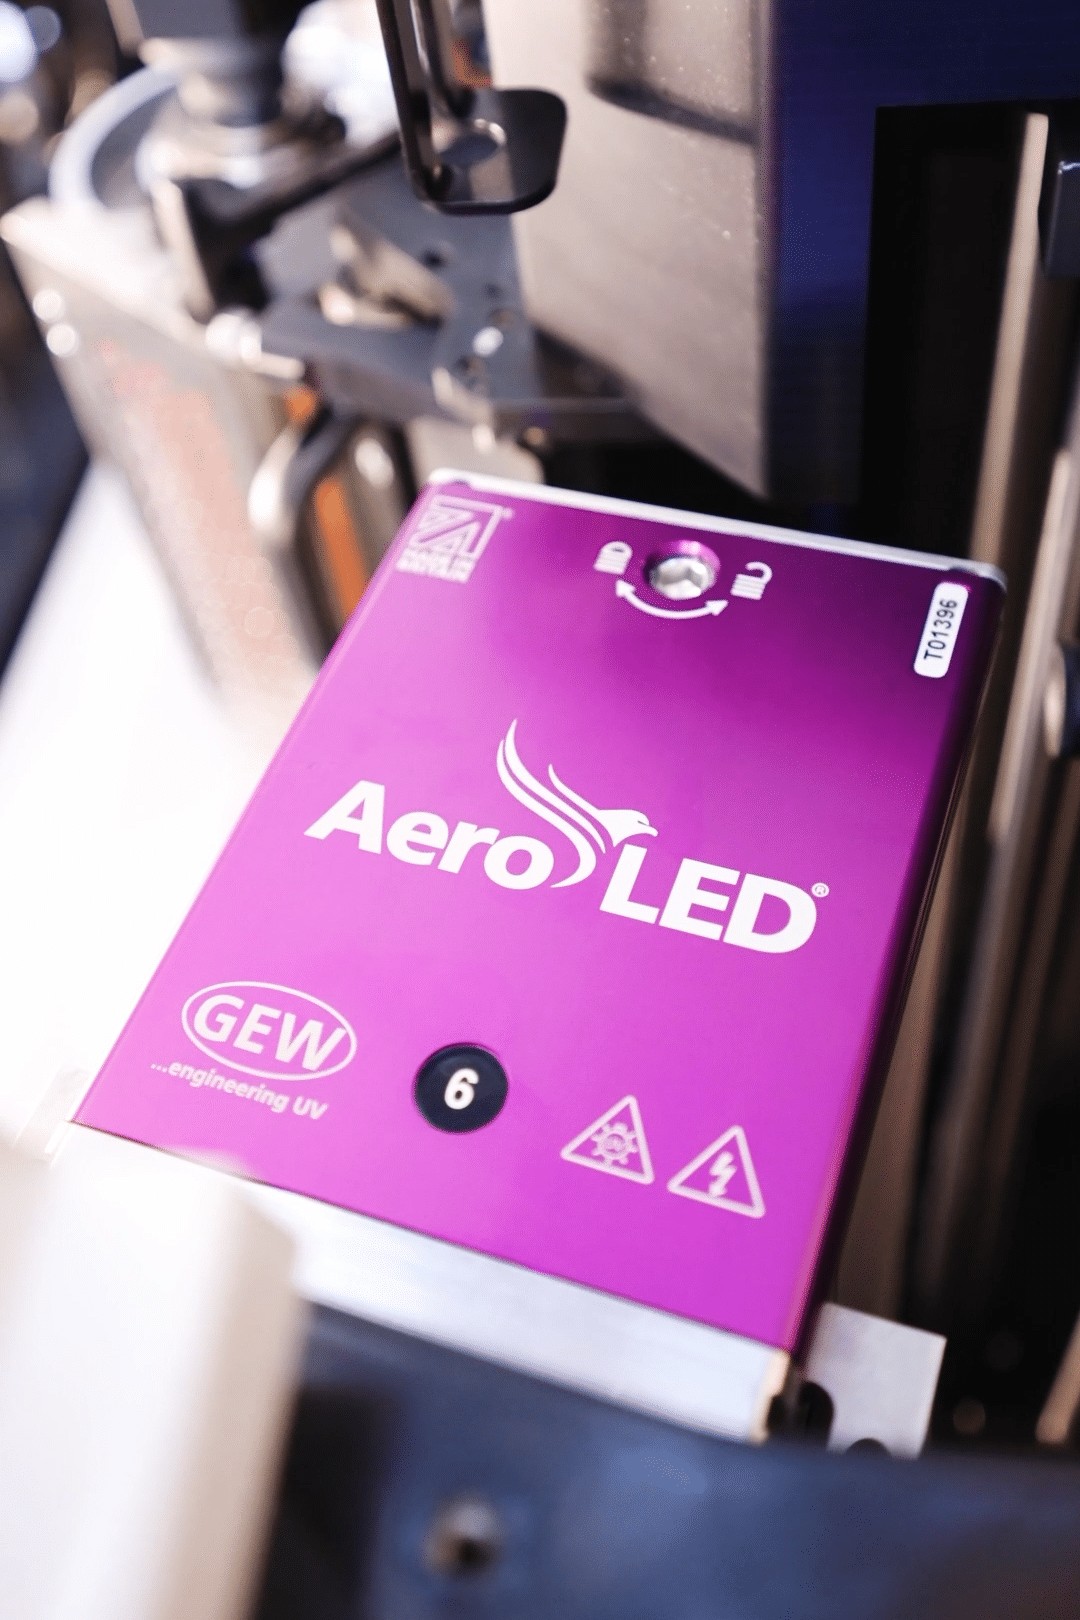 AeroLED ist ein luftgekühltes Härtungsystem für Druck-, Beschichtungs- und Converting-Anwendungen [Quelle: GEW]